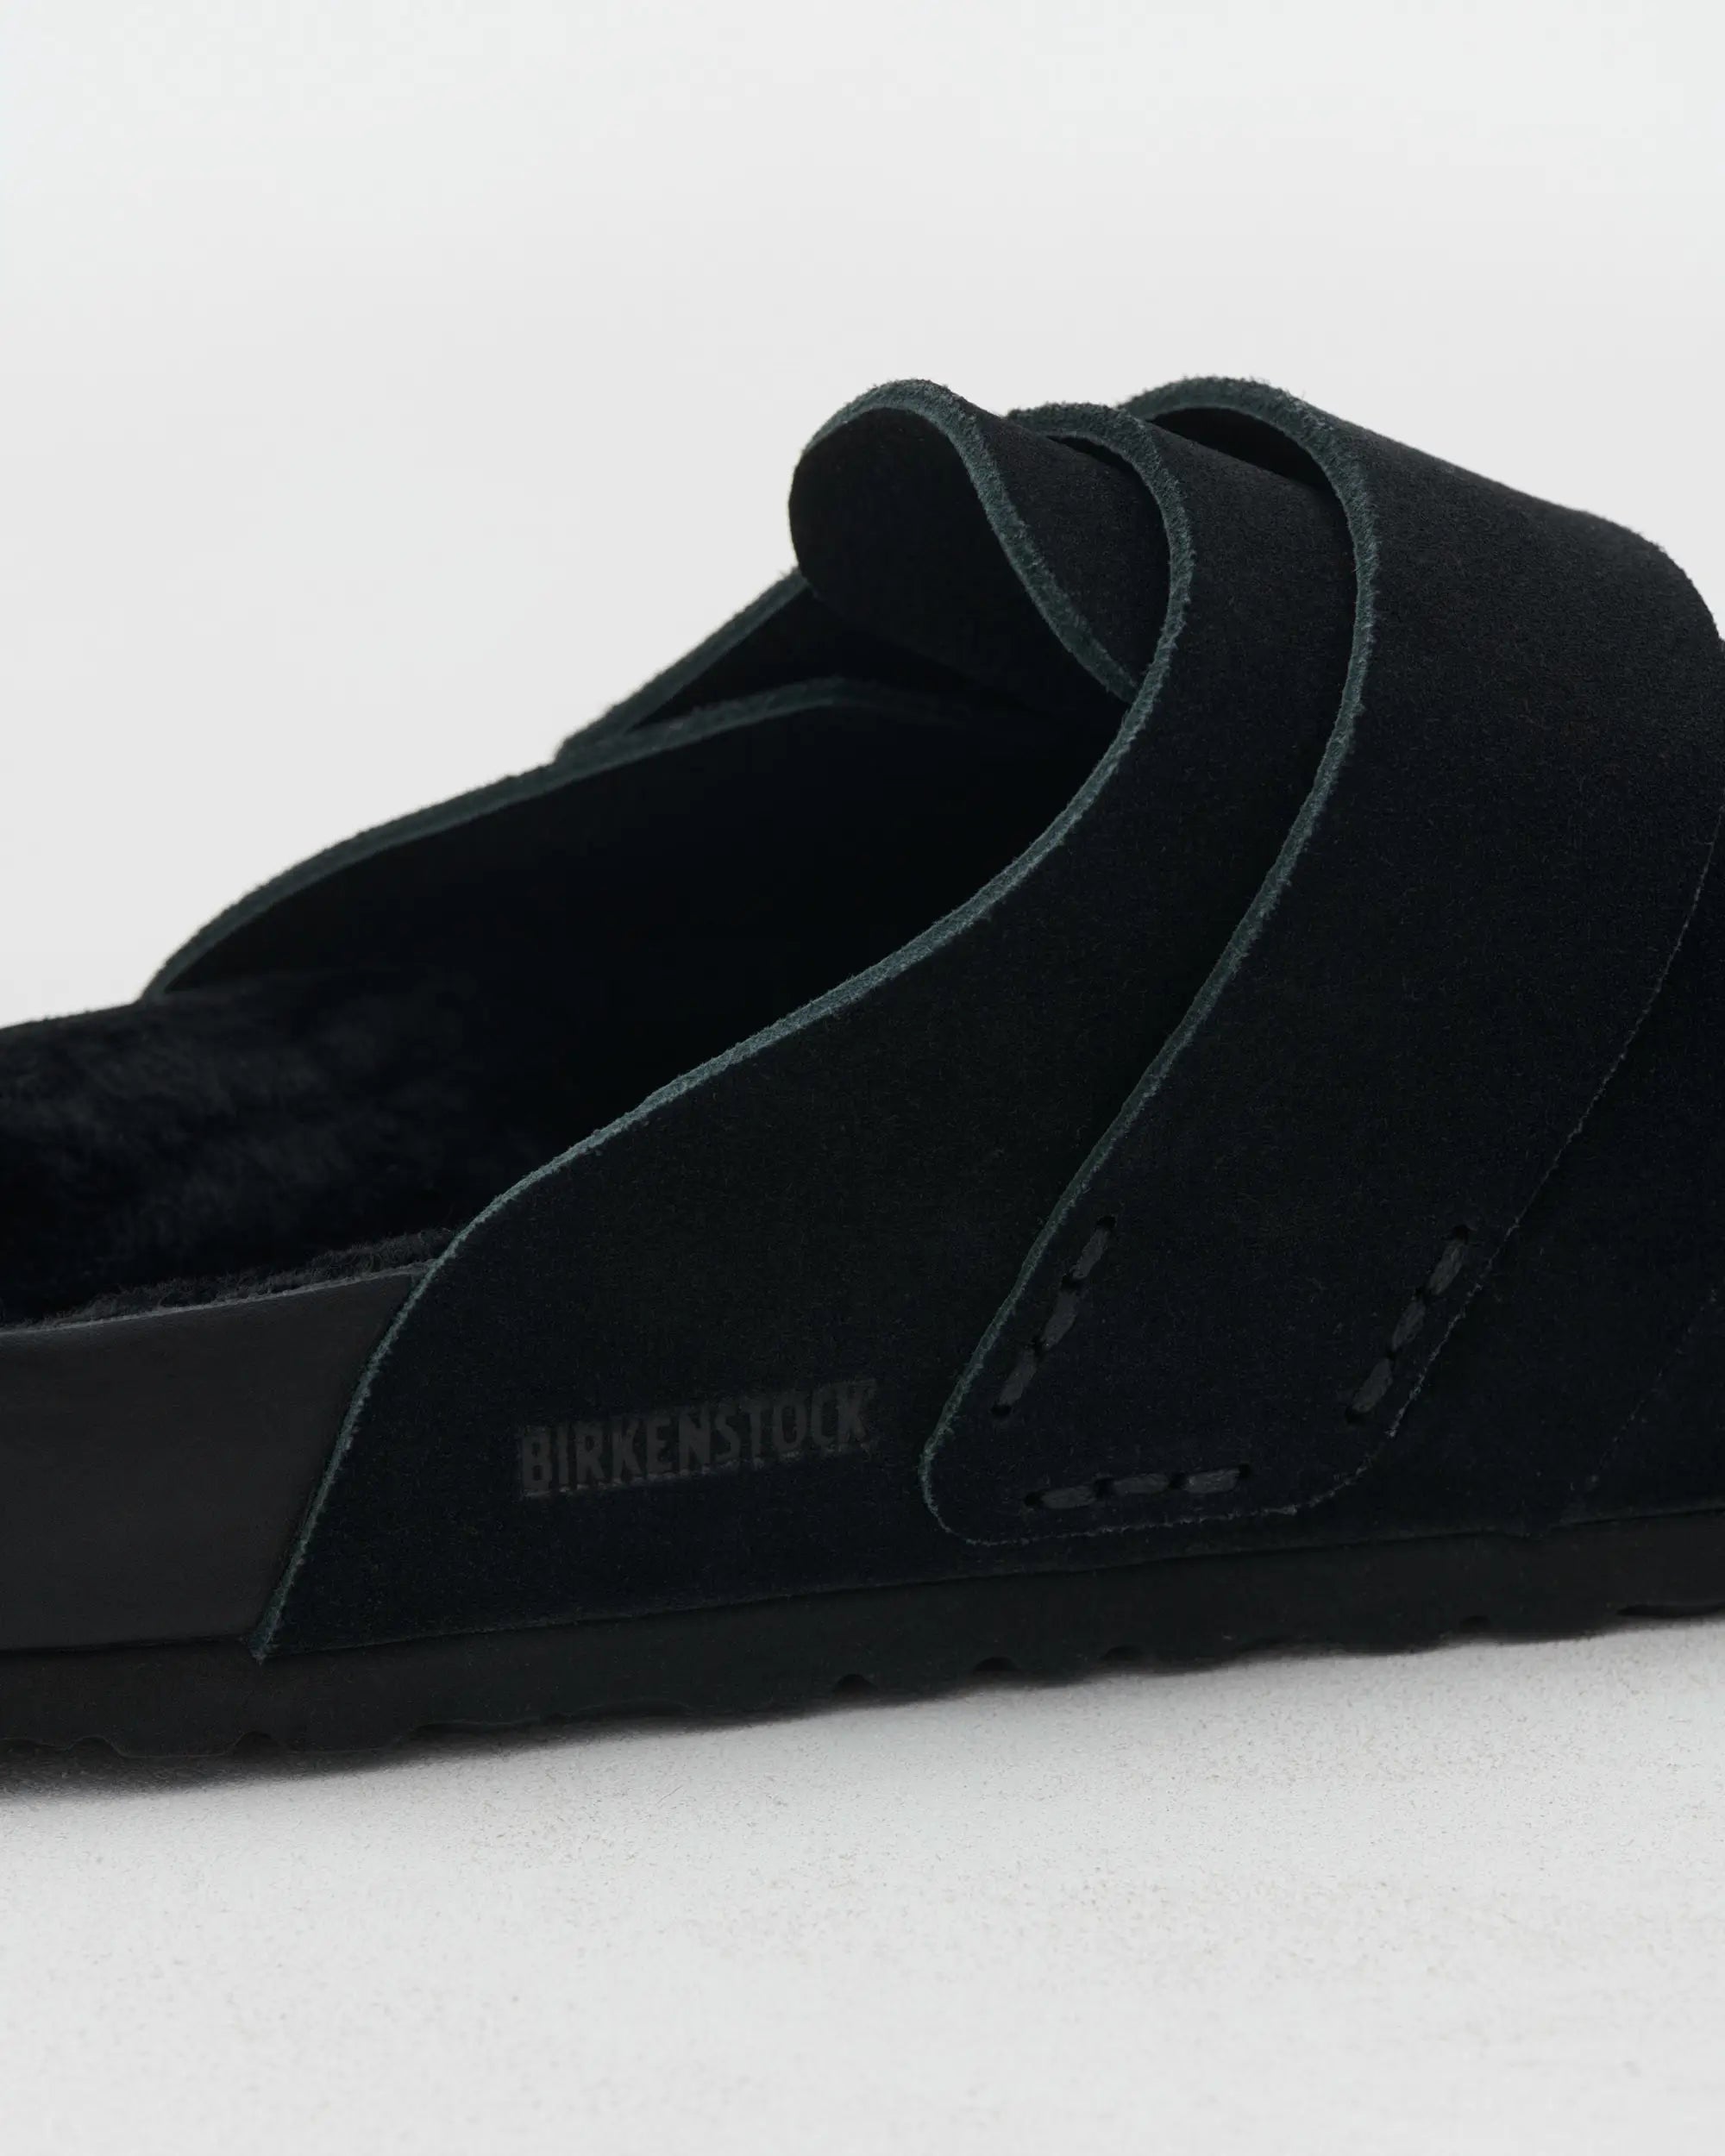 Tekla x Birkenstock - Nagoya Shoes in Slate